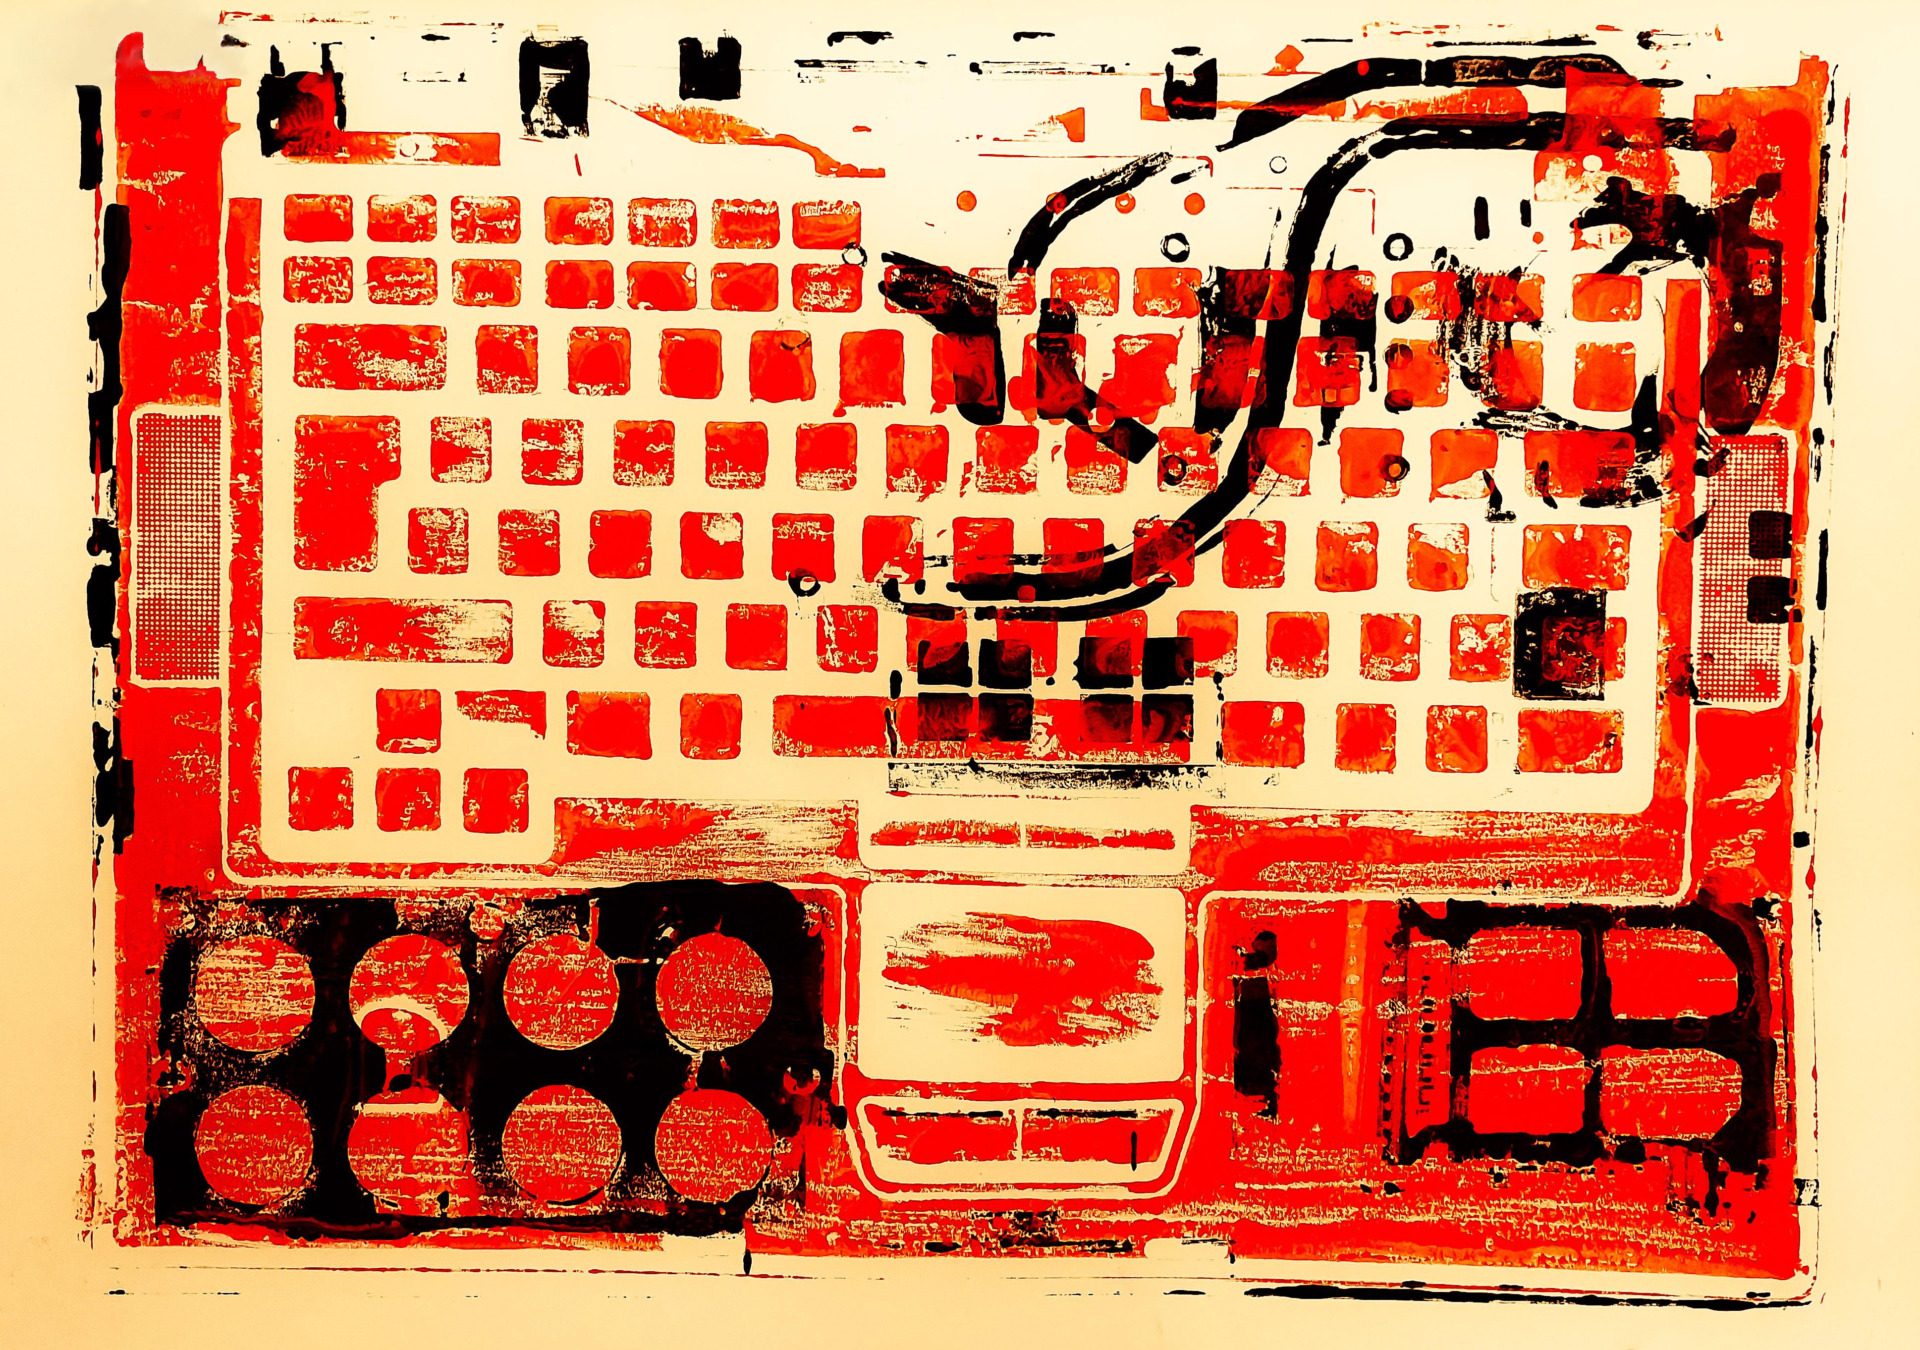 Red and black screenprint of keyboard